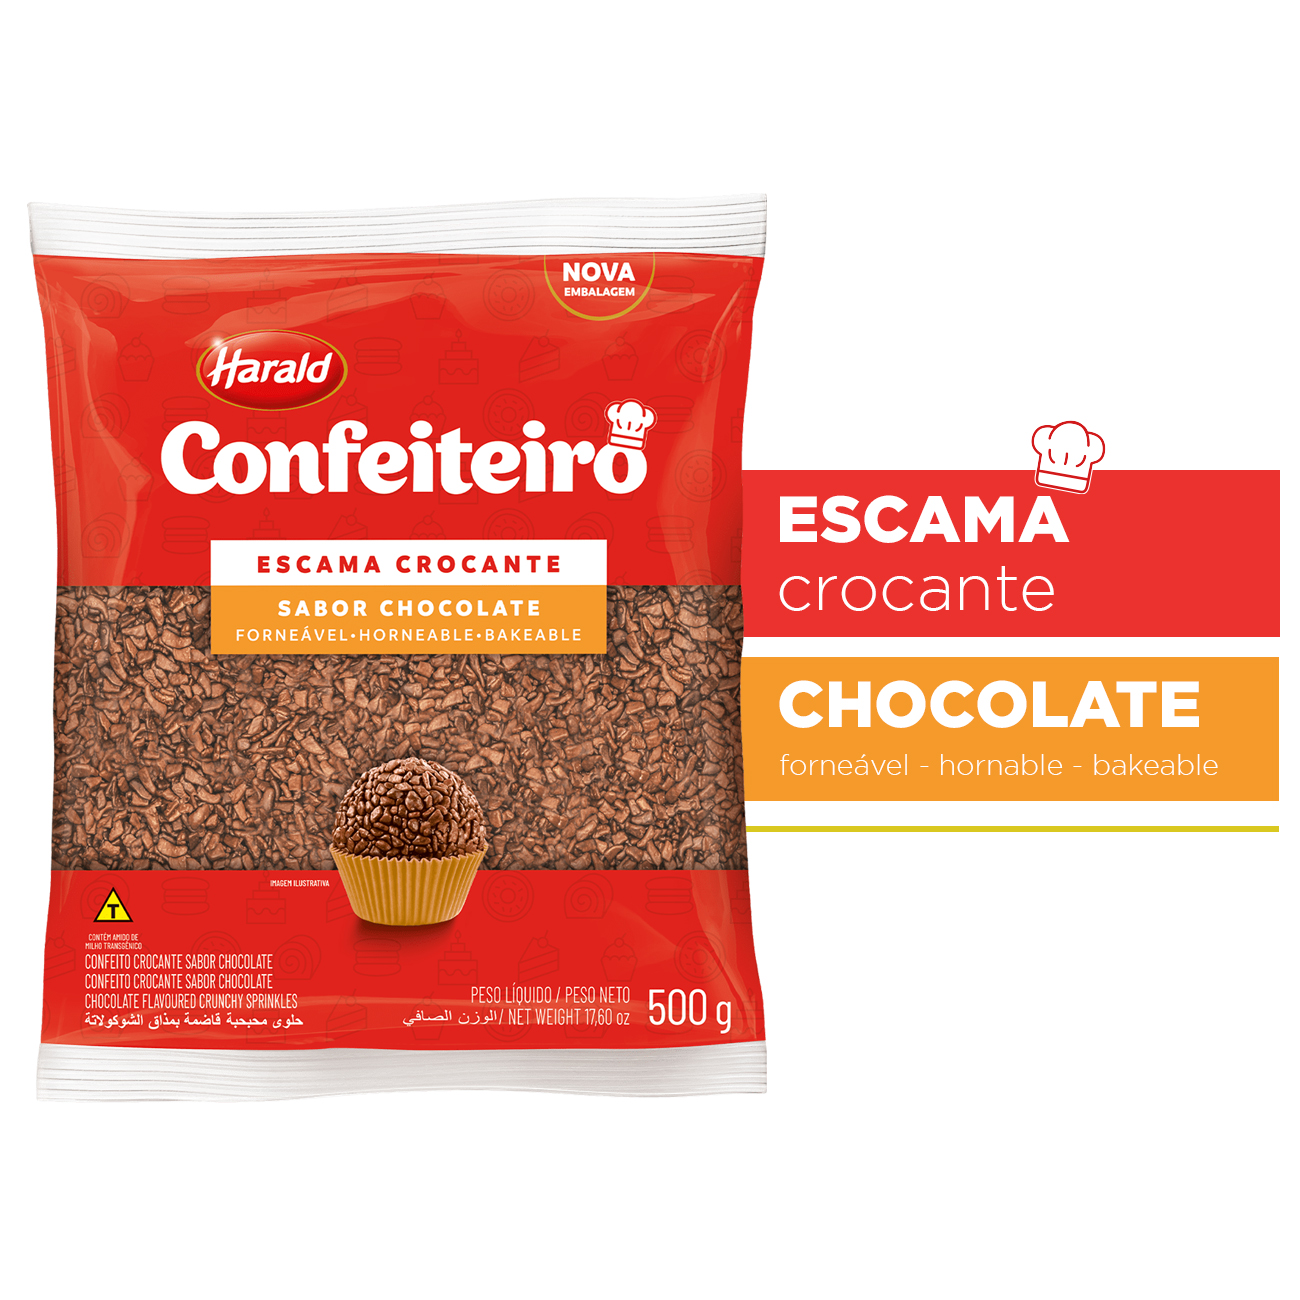 Chocolate Granulado Harald Confeiteiro Escama Crocante 500g